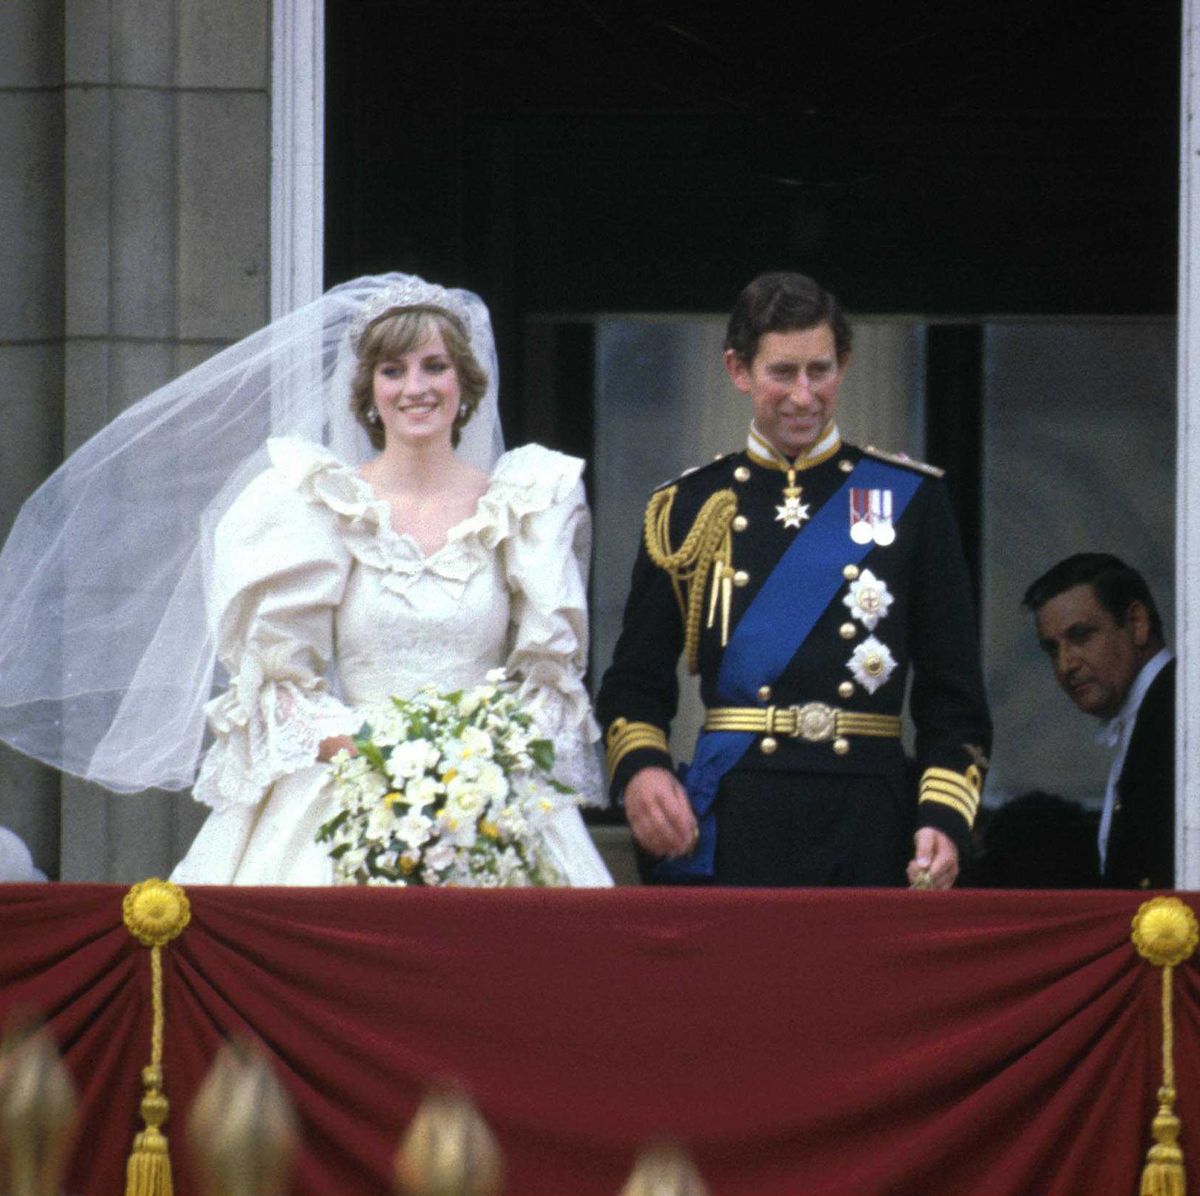 A History of Princess Diana's Favorite Designer Handbags Through